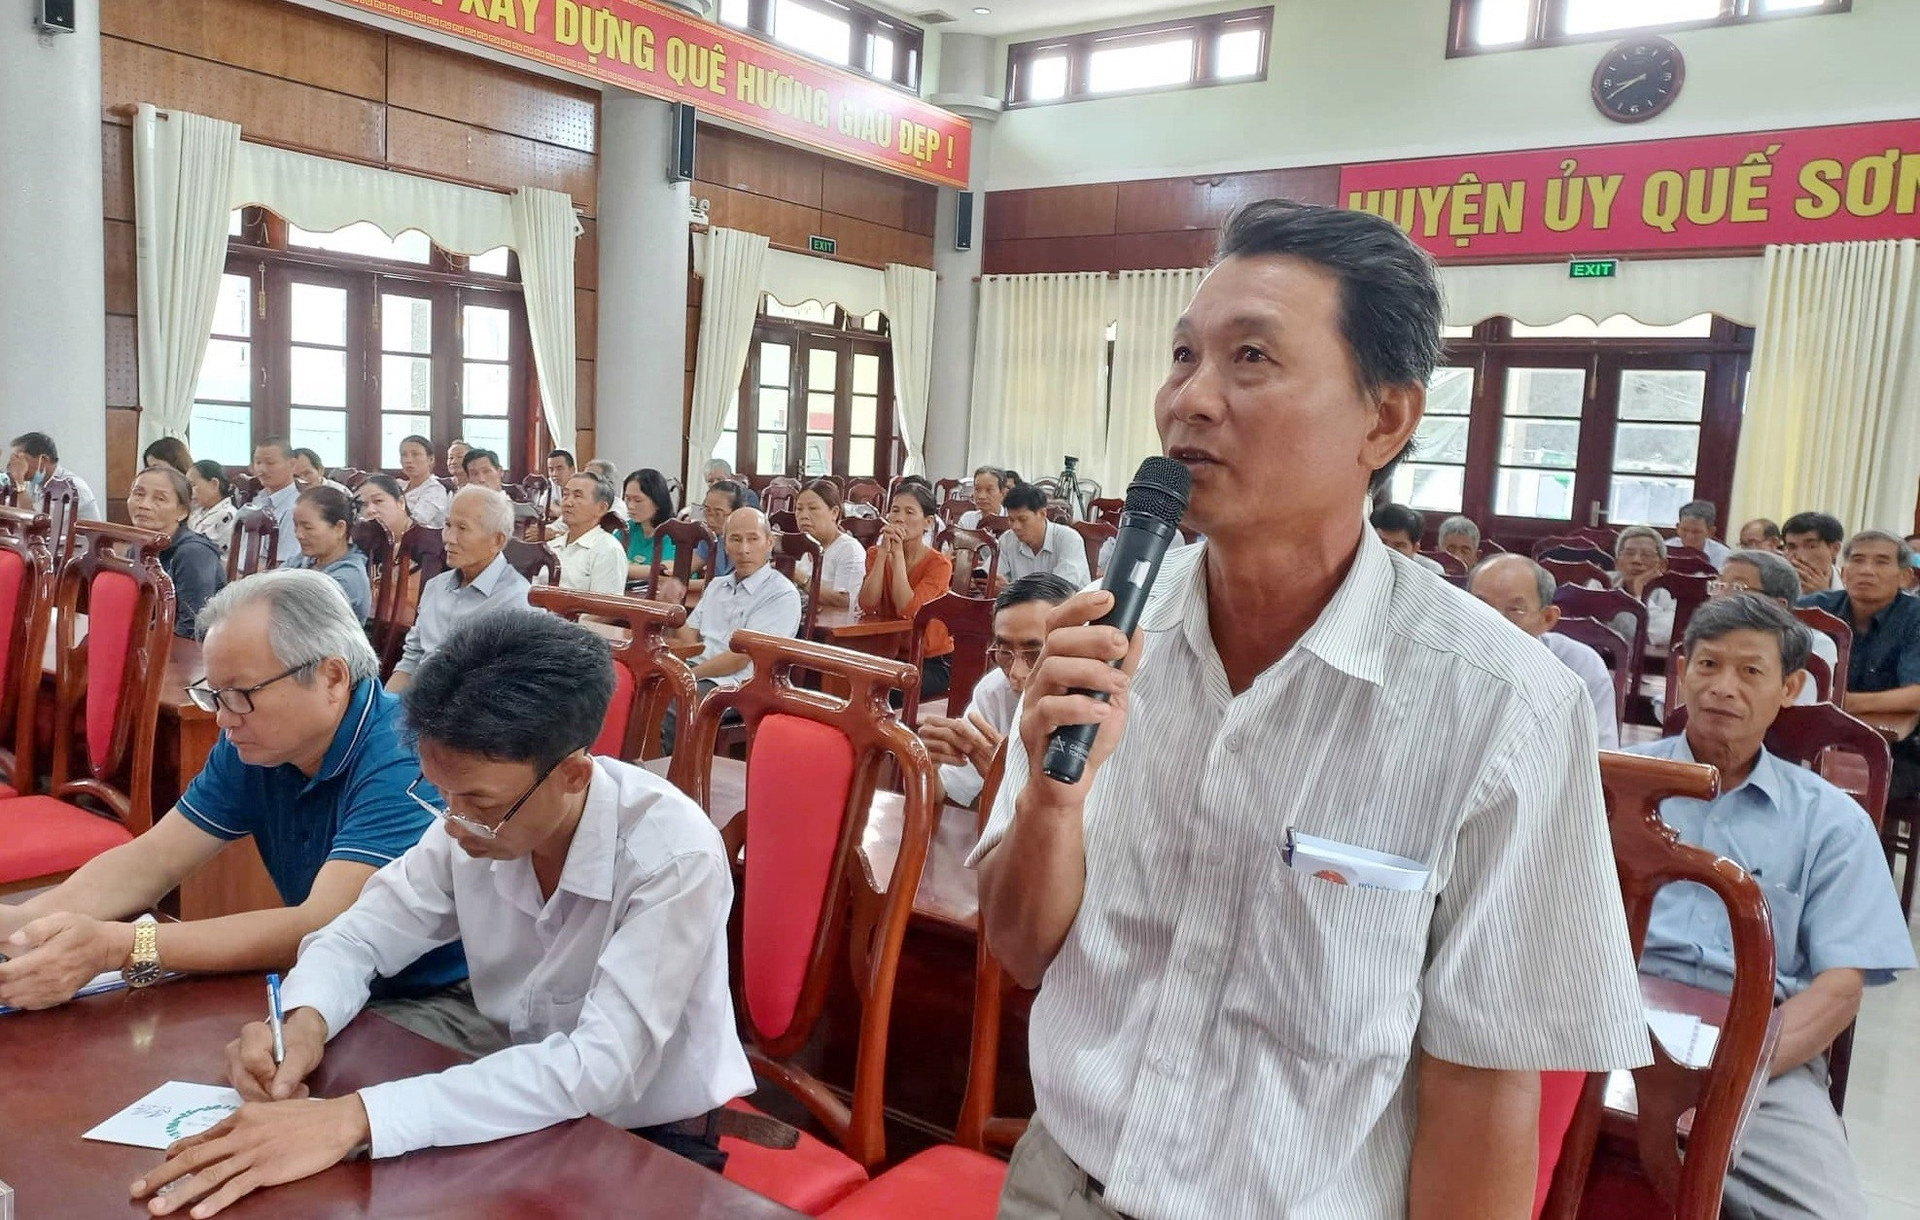 Nông dân Quế Sơn đề xuất ý kiến liên quan đến nông nghiệp, nông dân và nông thôn. ảnh DT